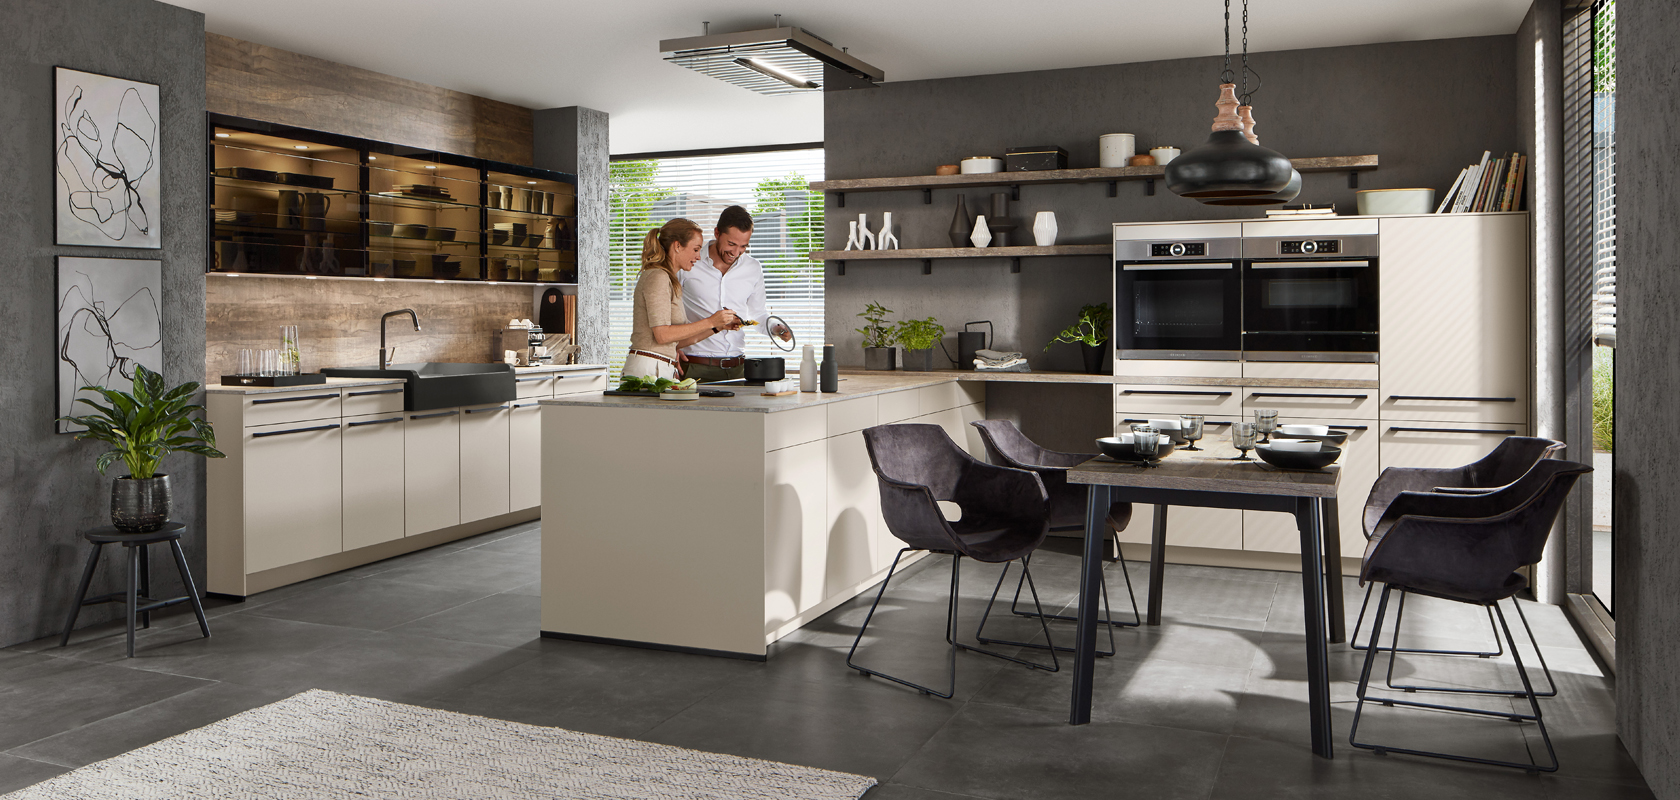 Una cocina moderna y elegante con una pareja cocinando juntos, que cuenta con gabinetes elegantes, electrodomésticos de acero inoxidable y un acogedor comedor con plantas en macetas.